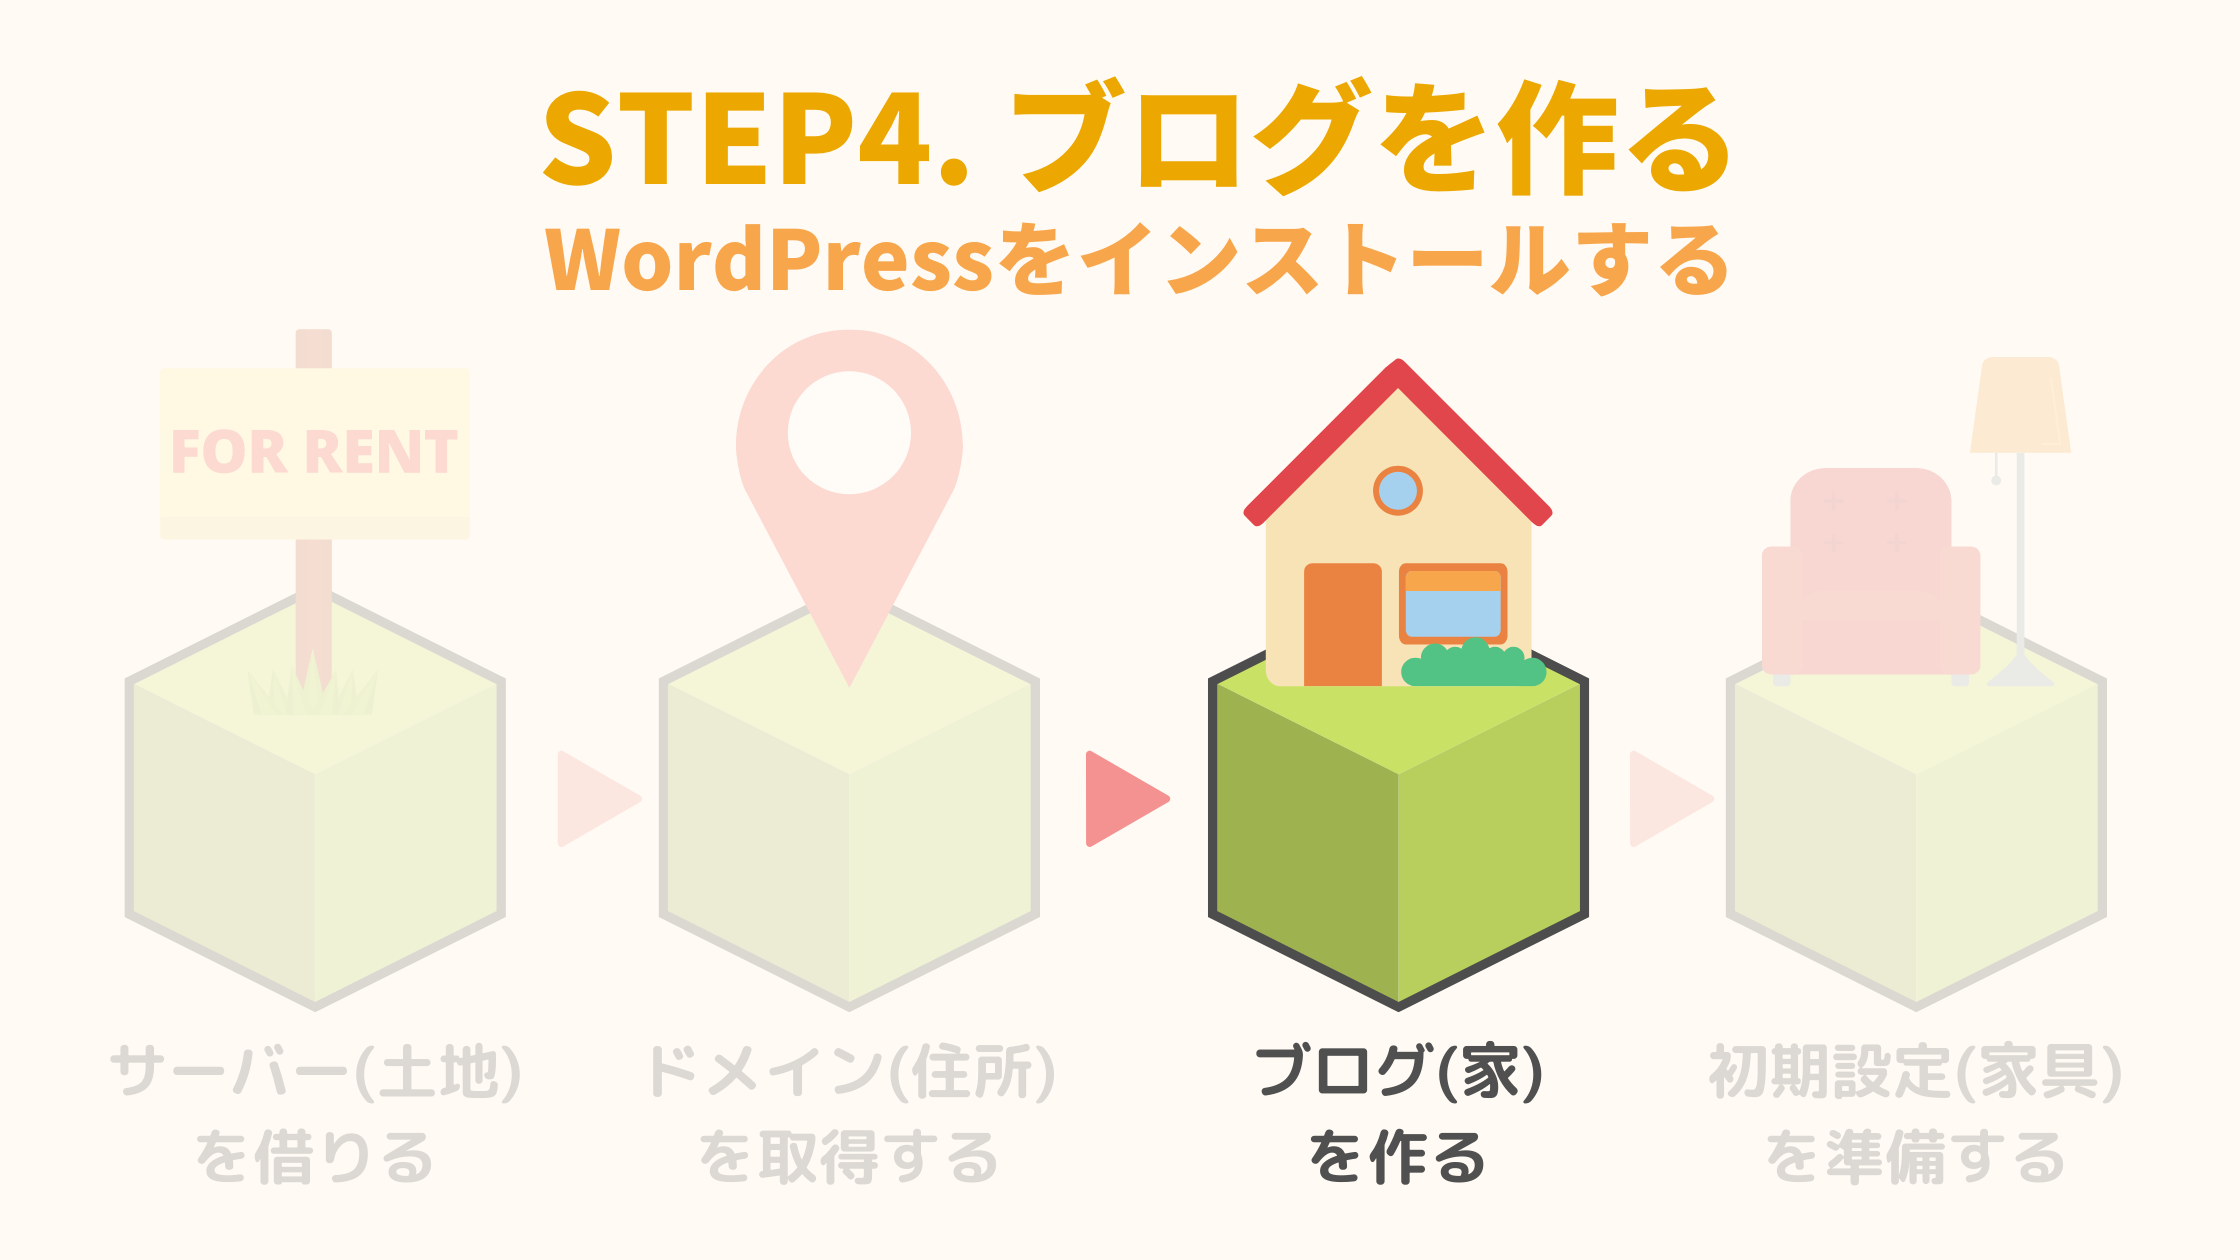 STEP4. ブログを作る(WordPressを簡単インストール)